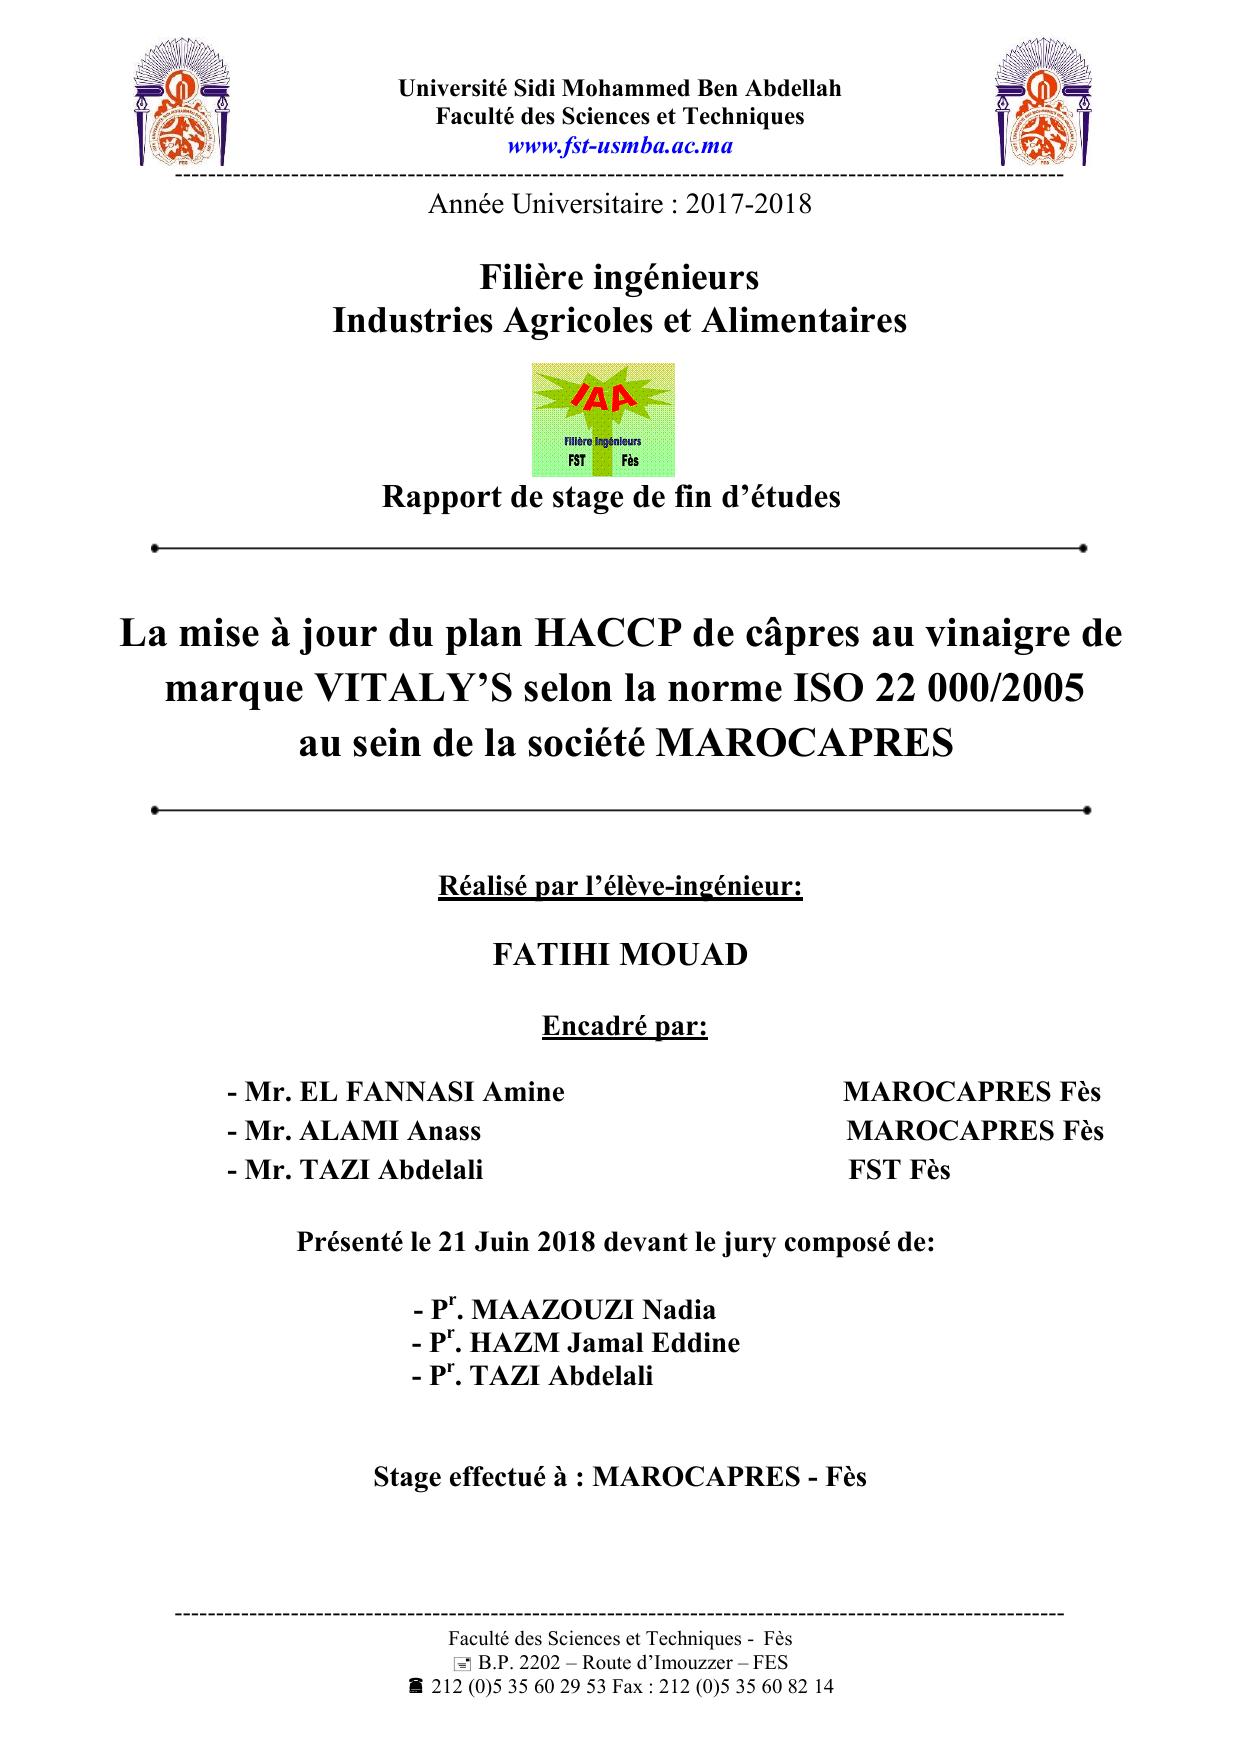 La mise à jour du plan HACCP de câpres au vinaigre de marque VITALY’S selon la norme ISO 22 000/2005 au sein de la société MAROCAPRES